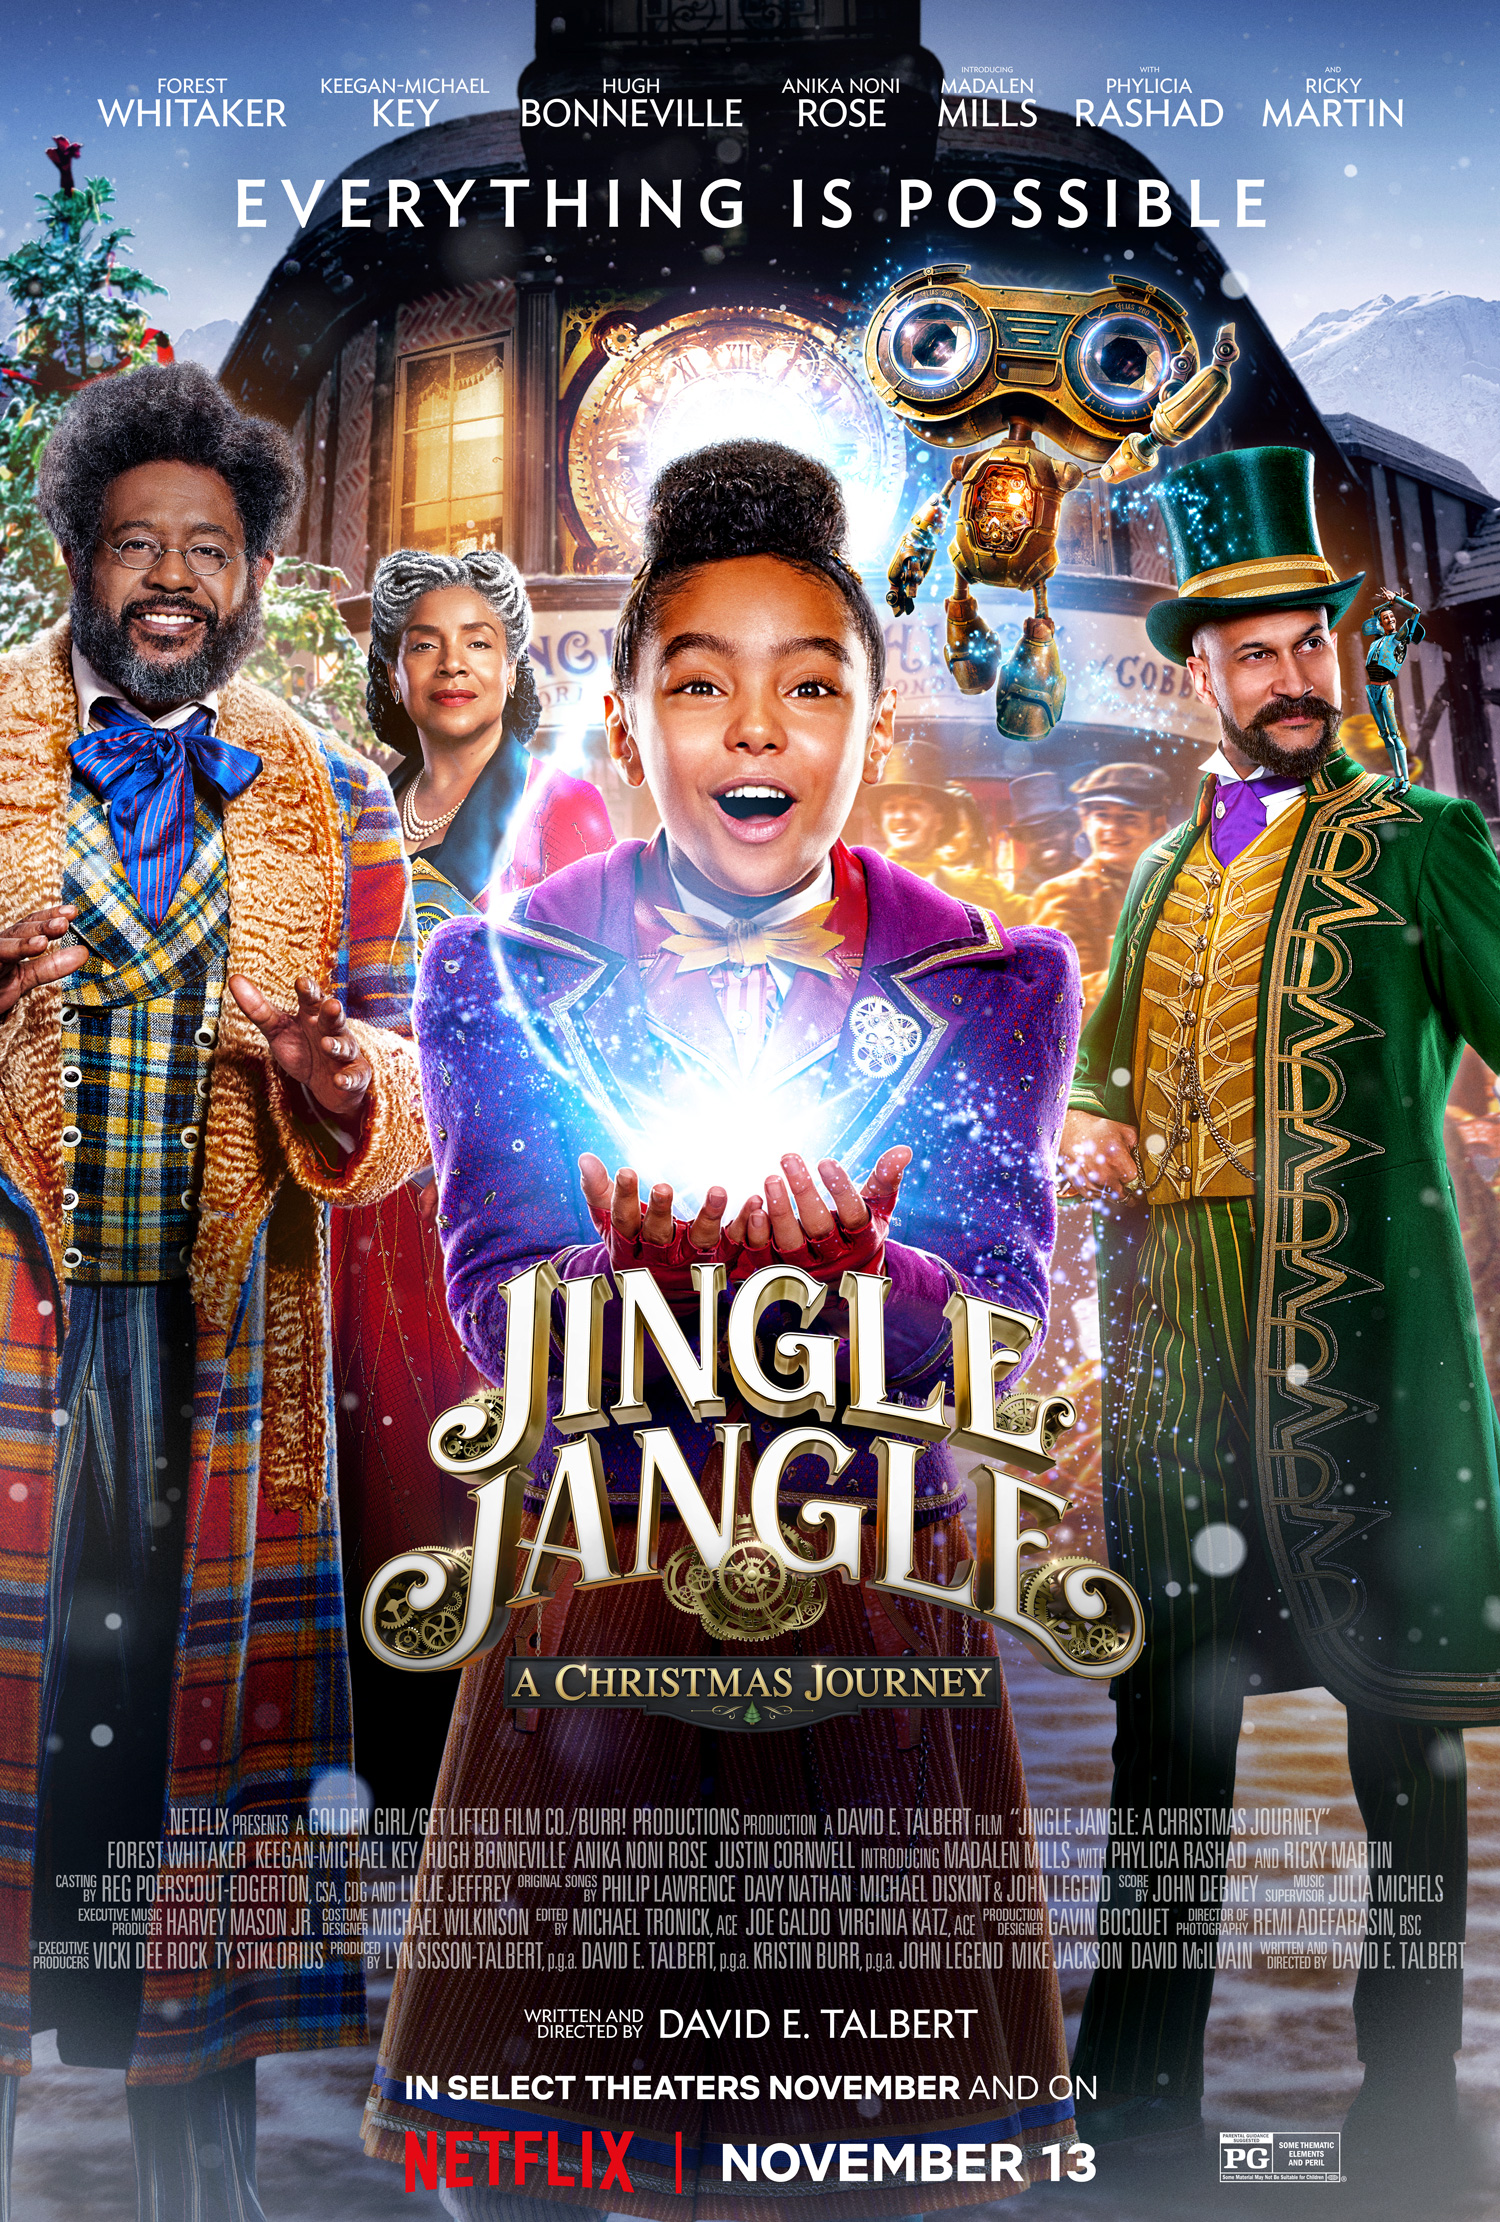 [รีวิว] jingle jangle : a christmas journey ปลุกศรัทธาความเชื่อในตัวคุณ ด้วยมิวสิคัล